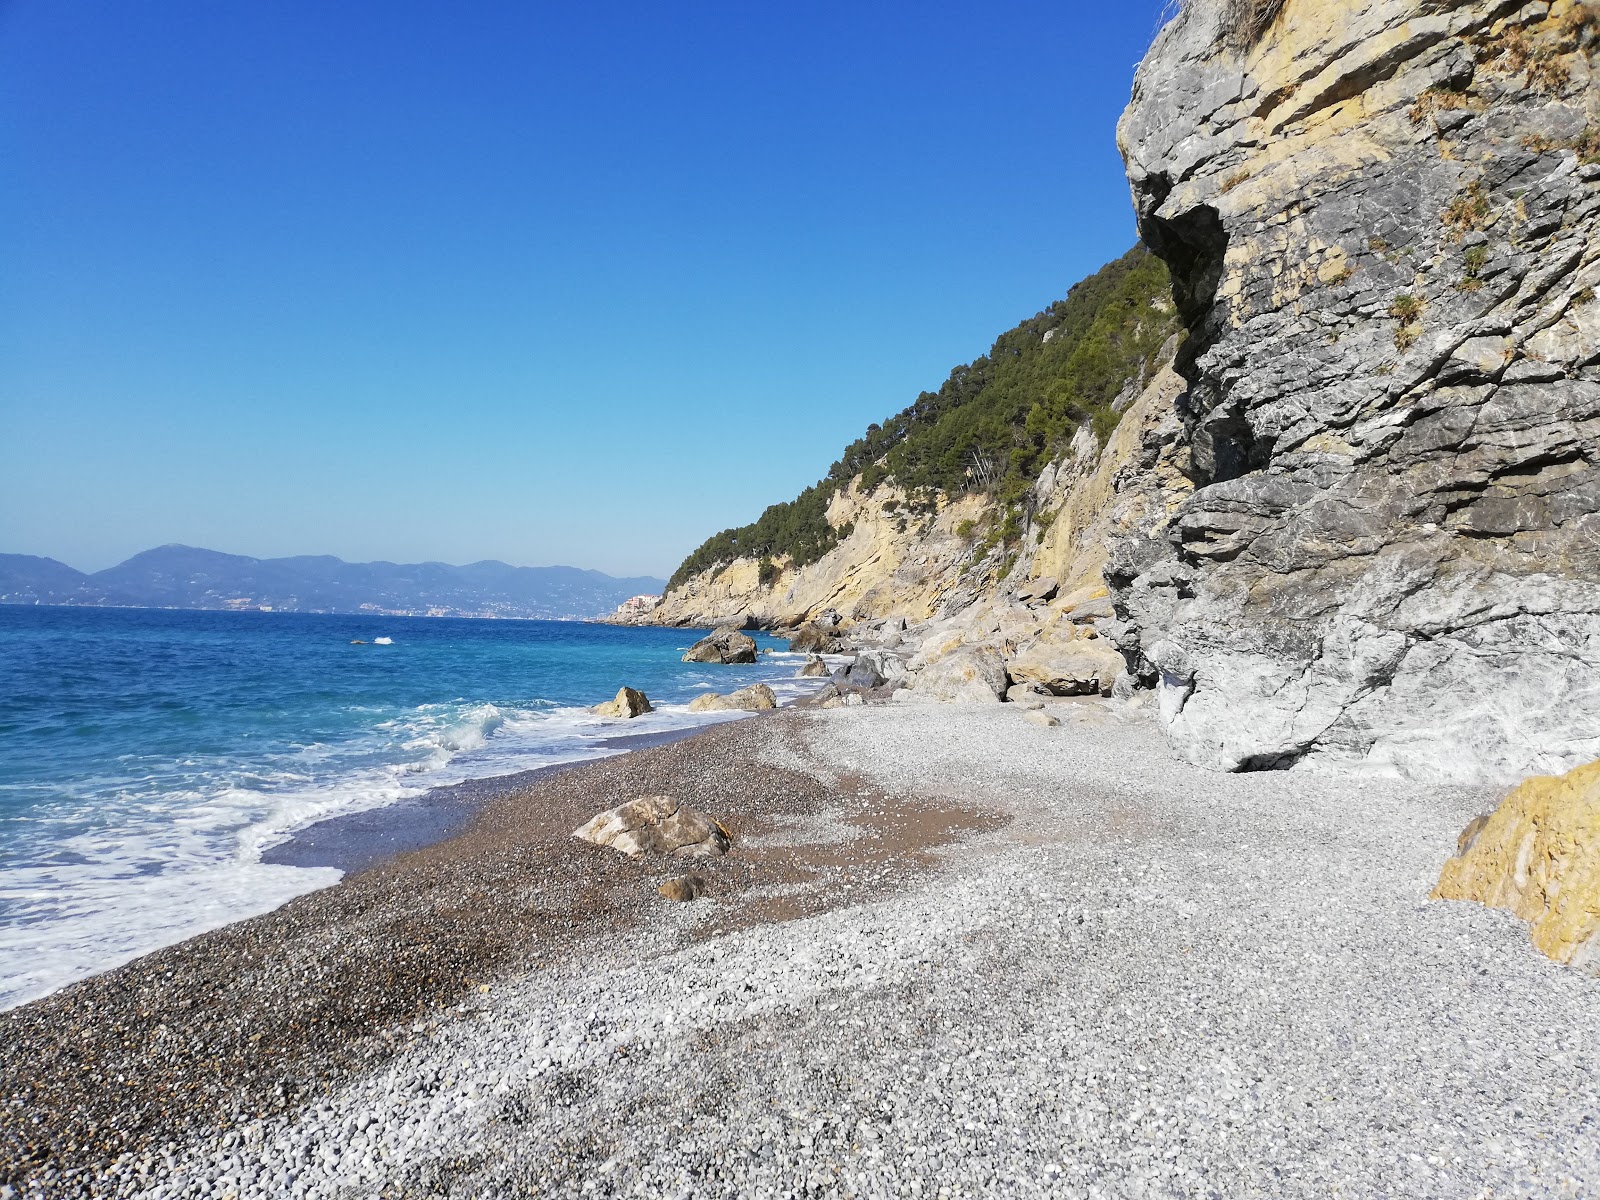 Photo of Spiaggia La Marossa with small multi bays